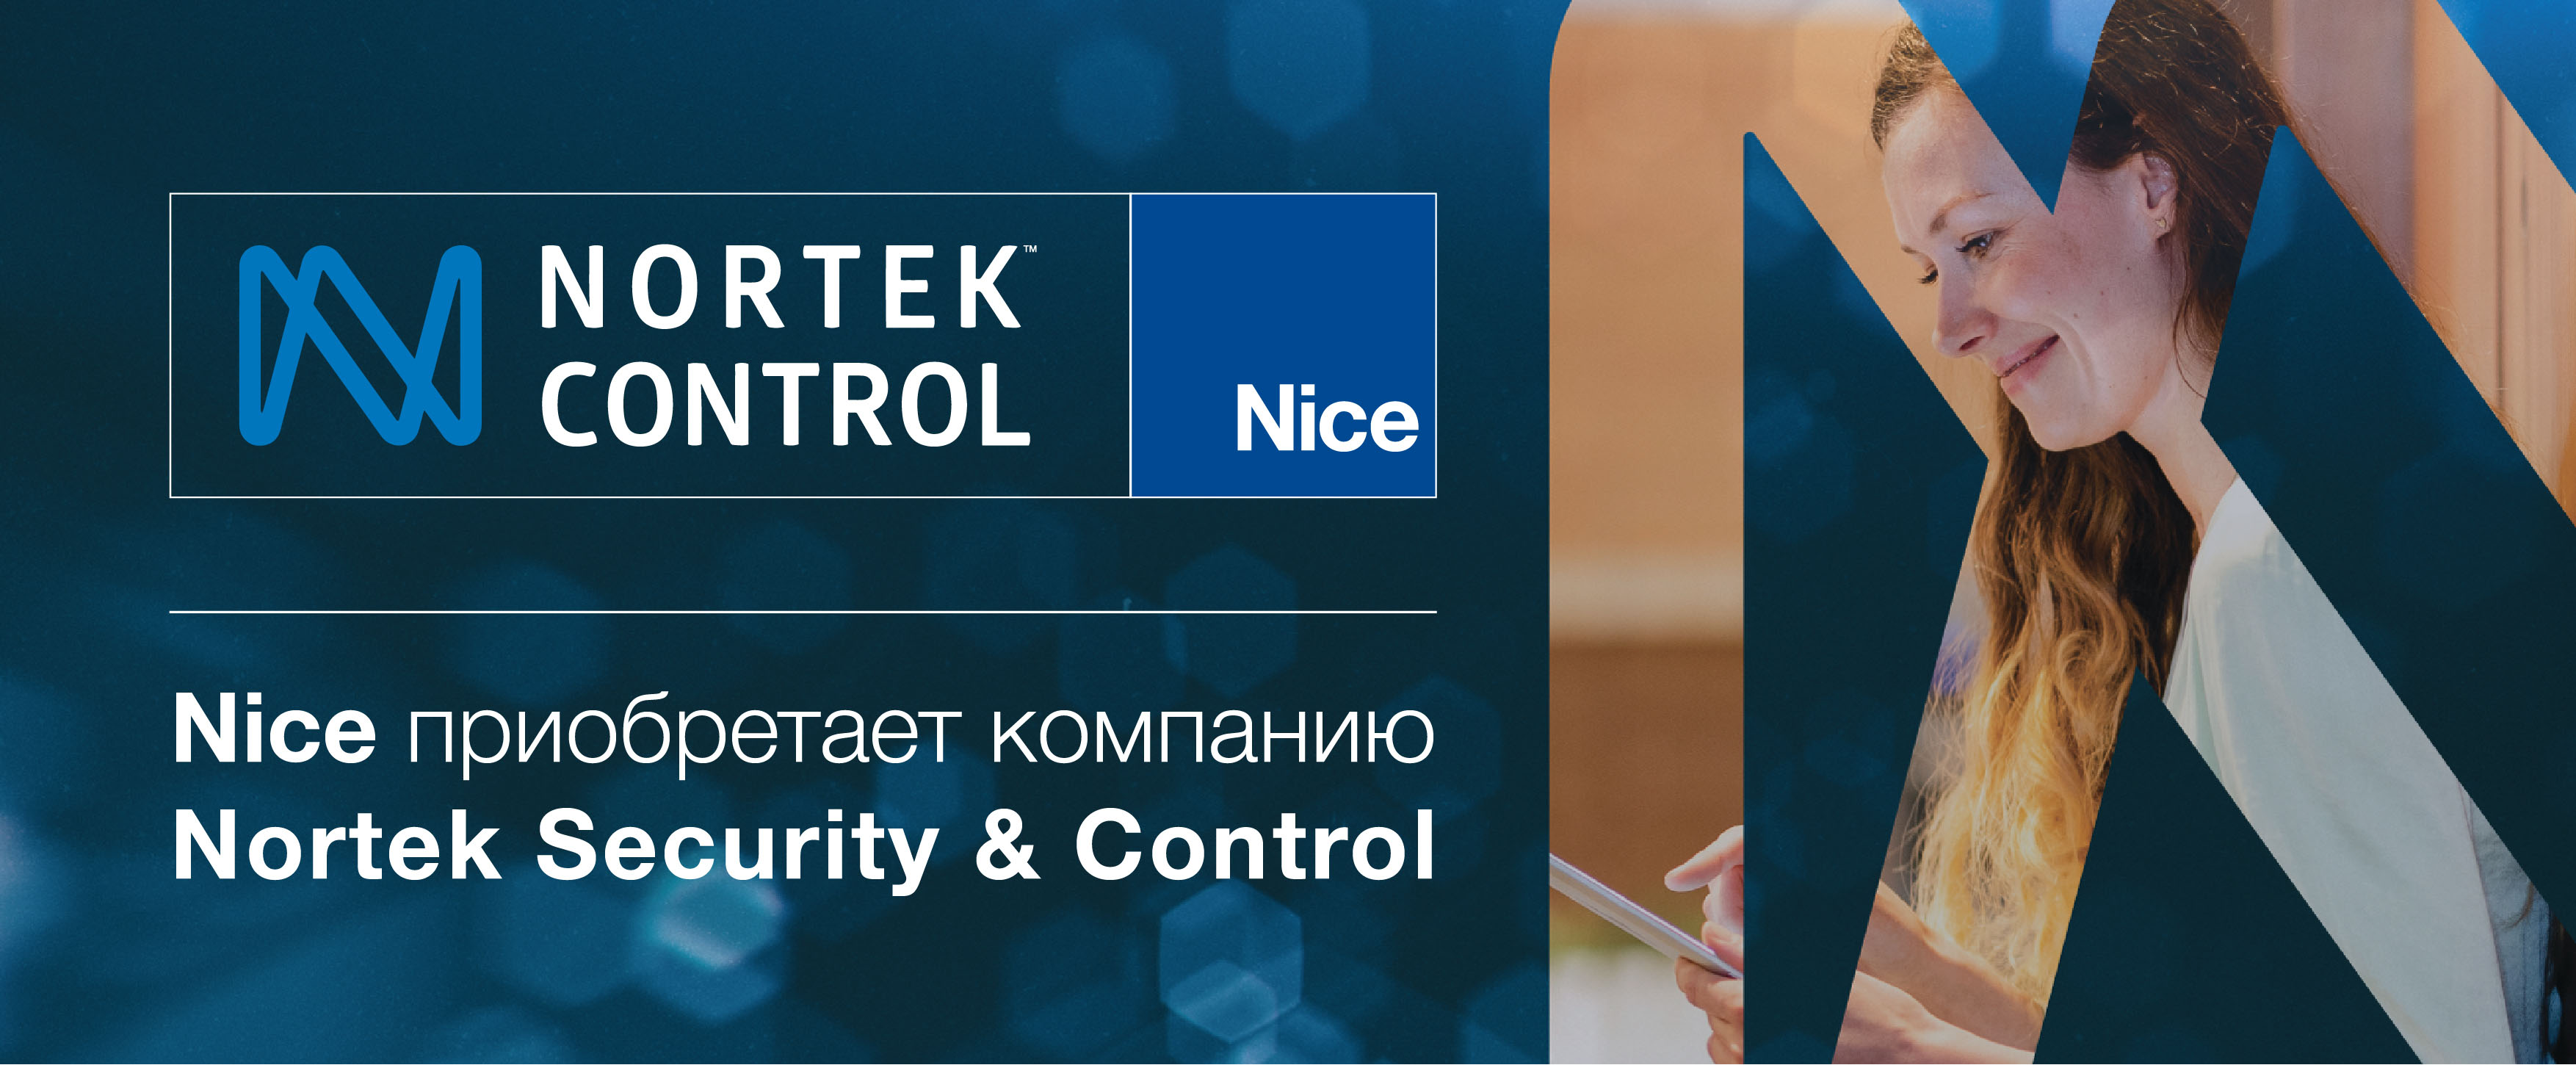 Nice объявляет о приобретении компании Nortek Security & Control